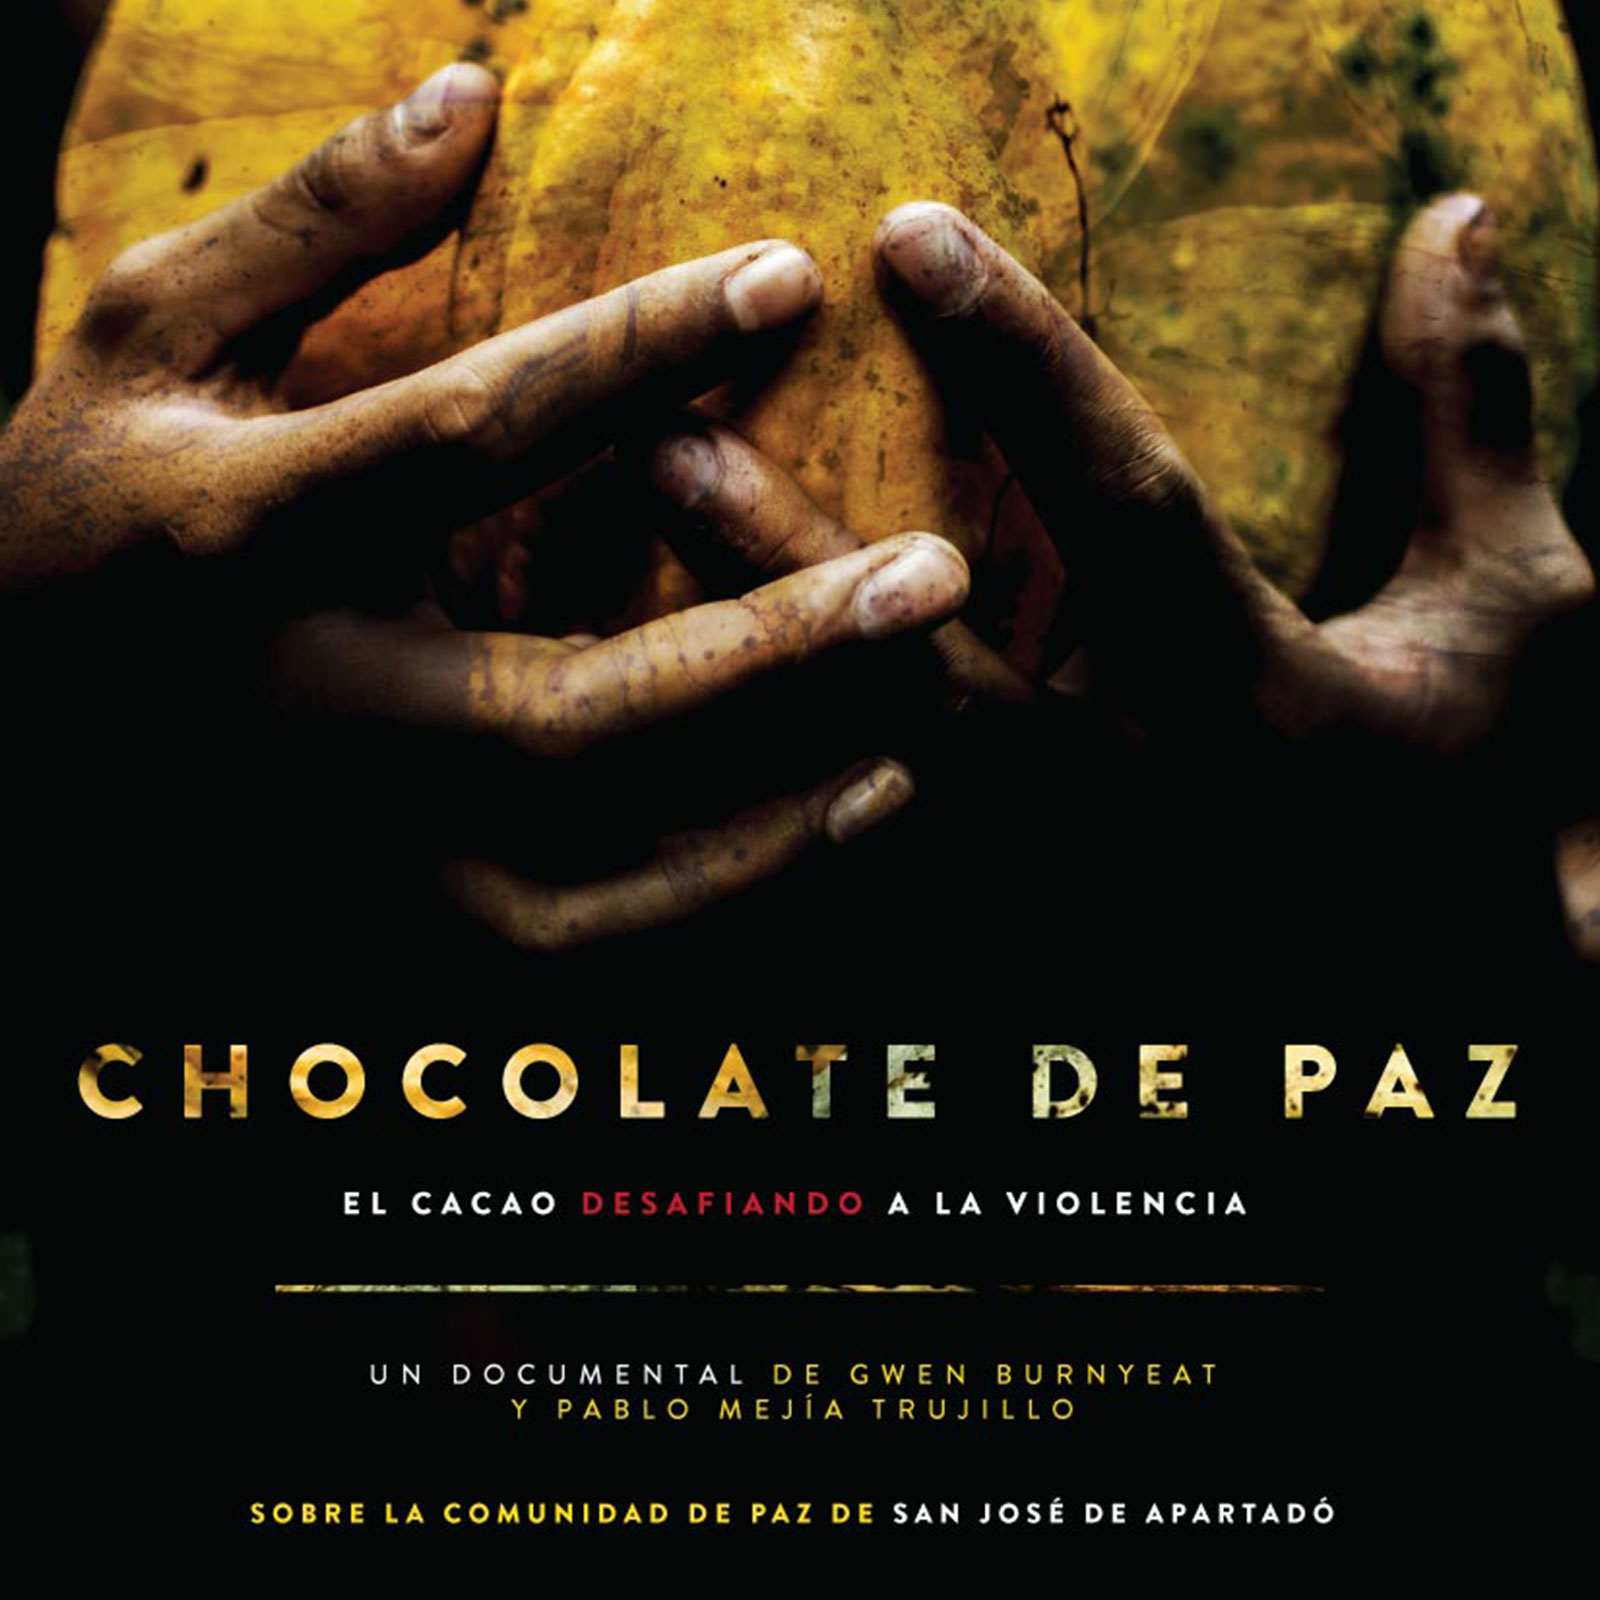 Chocolate de Paz